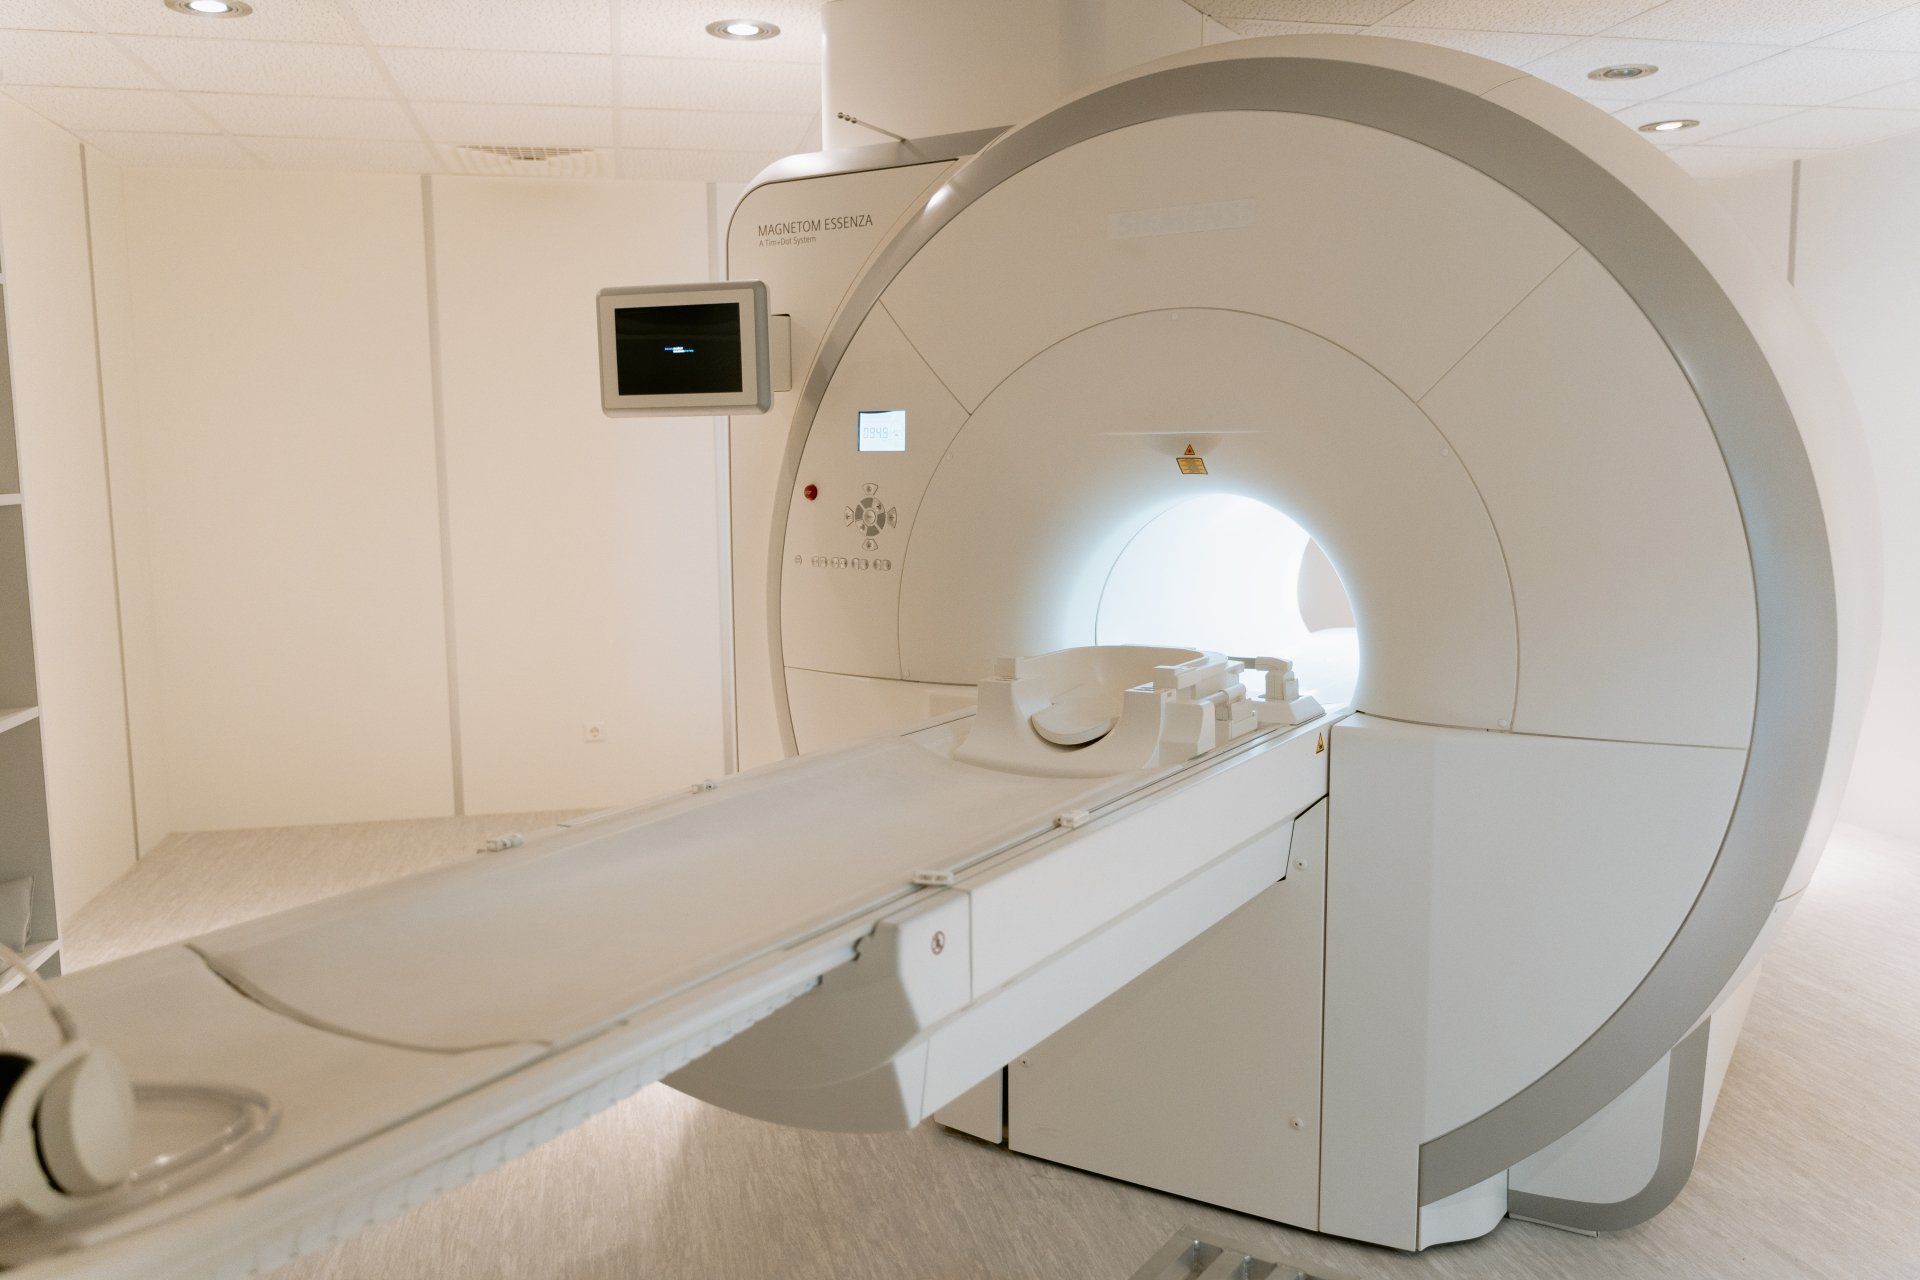 Ressonância magnética-RM – Perceba a sua importância no diagnóstico e estadiamento do cancro da mama